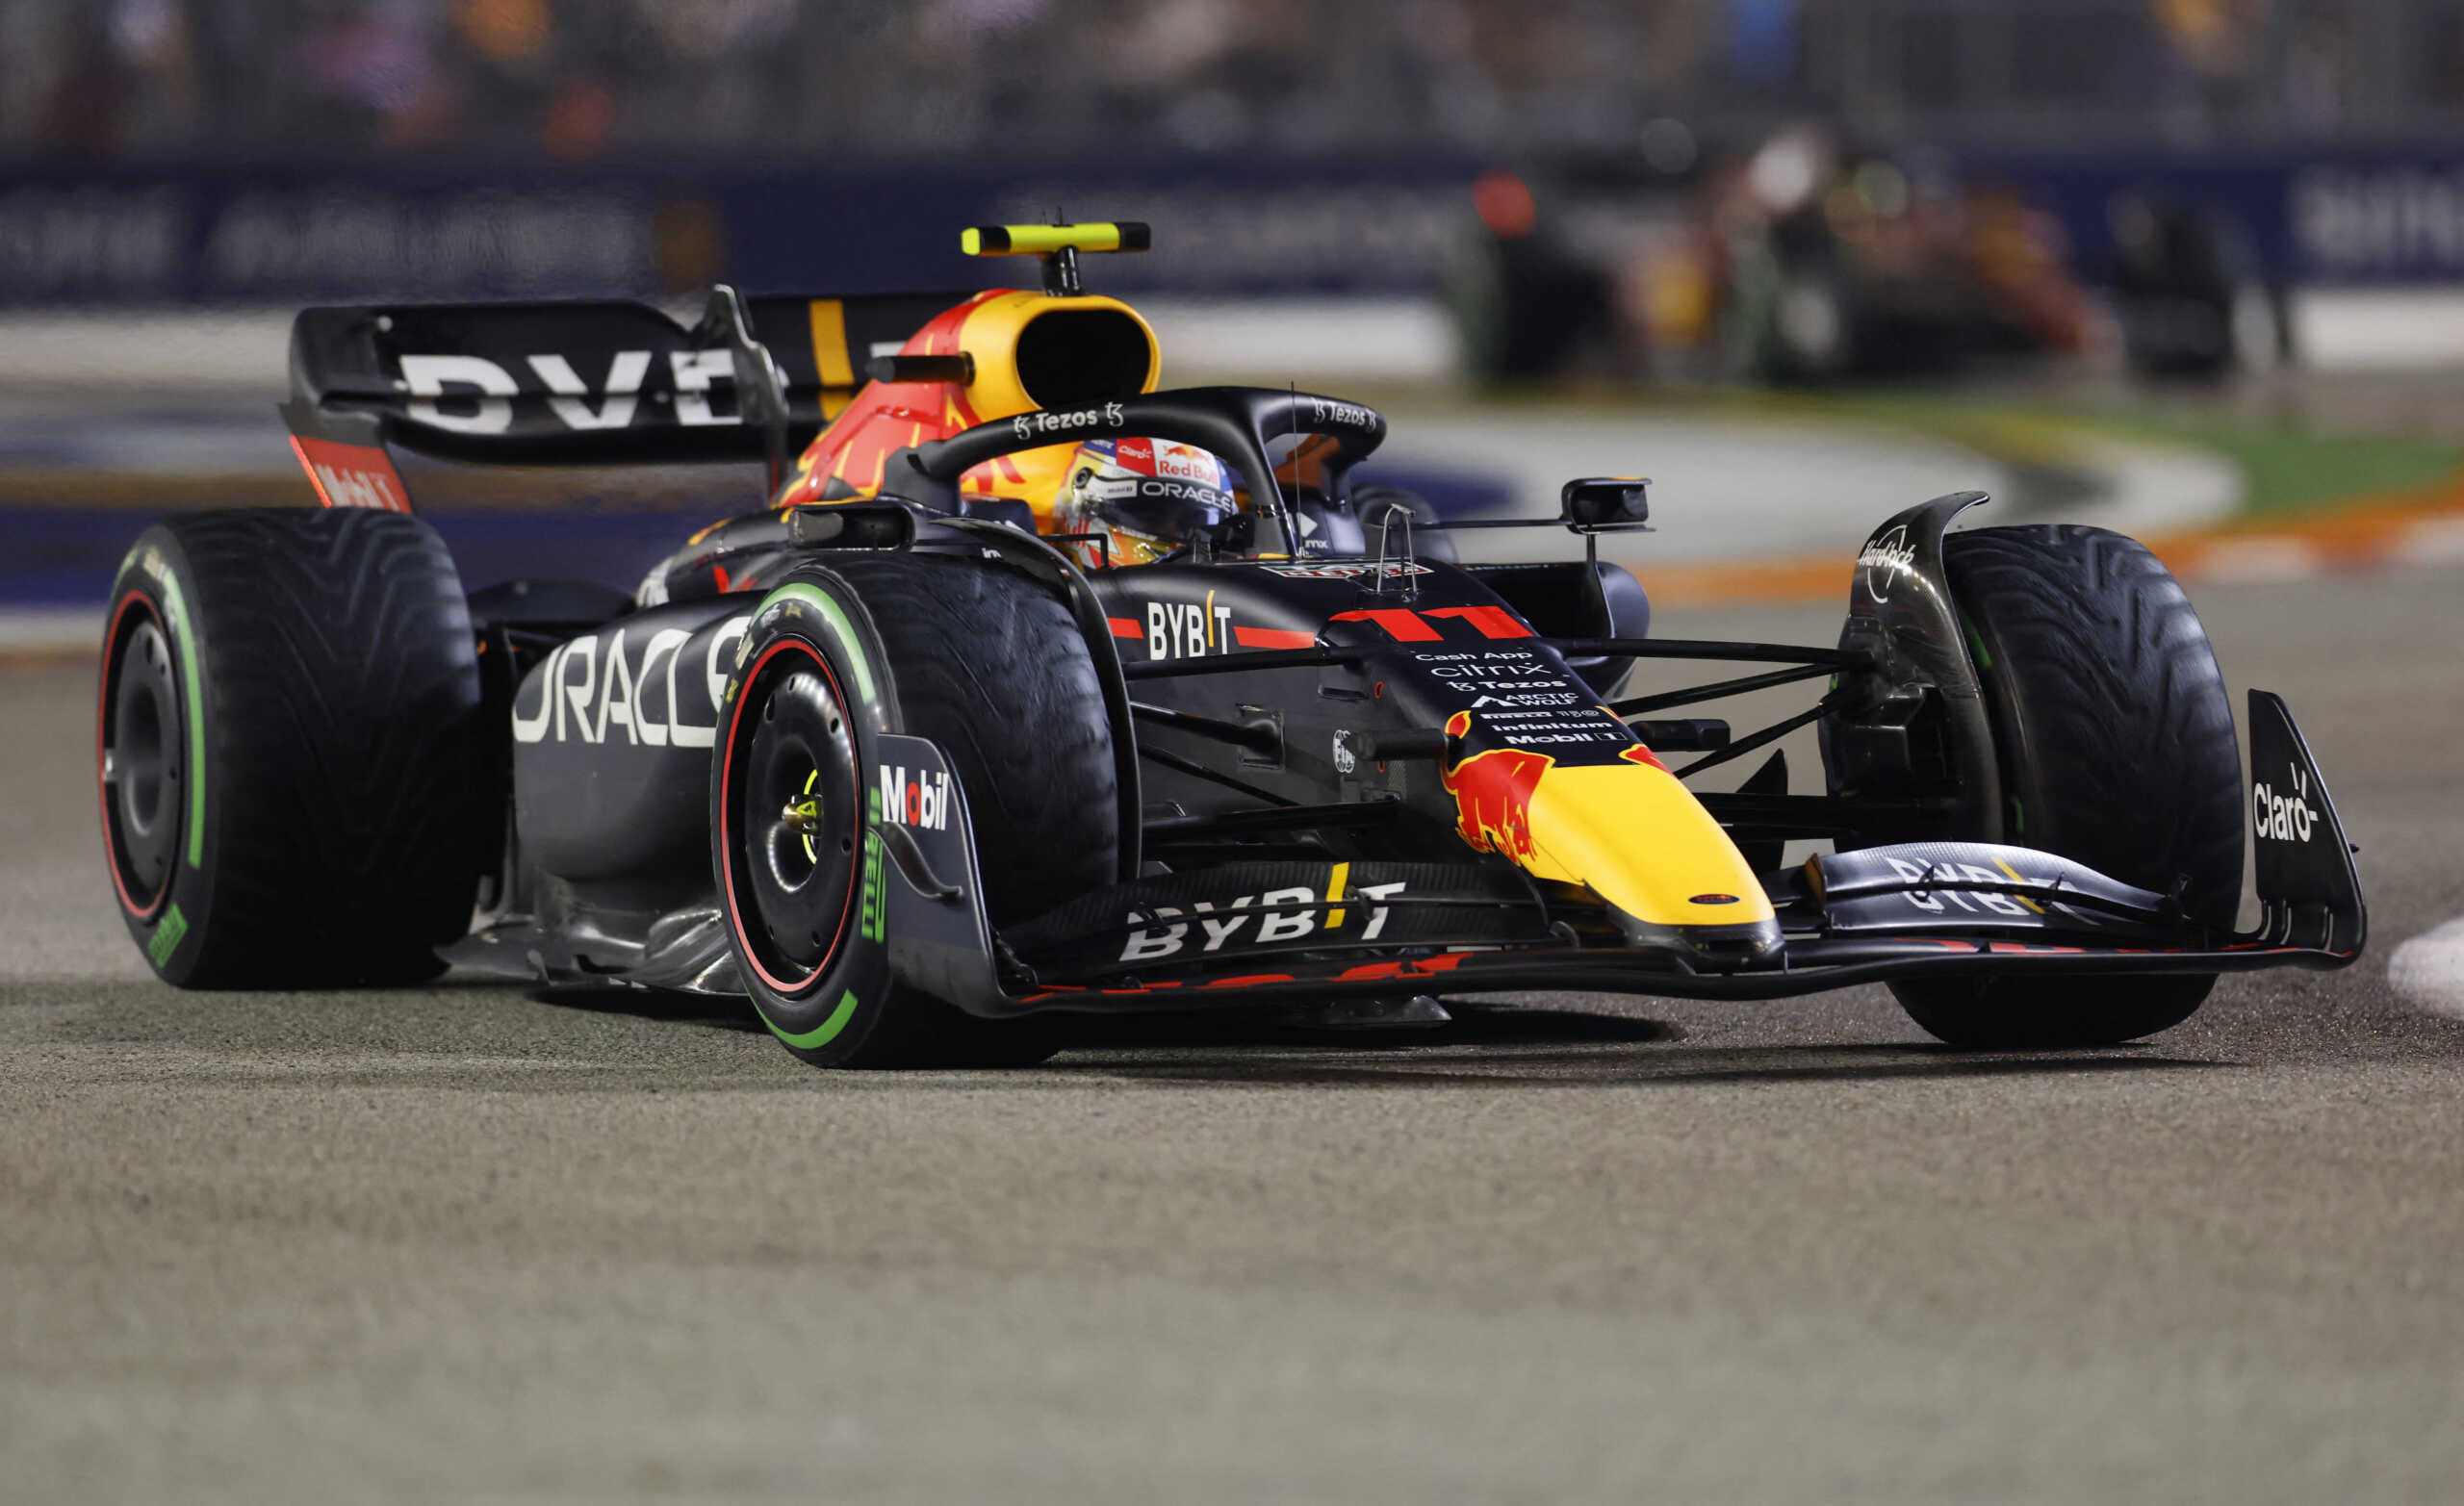 Formula 1: Ανακοινώθηκαν οι έξι αγώνες σπριντ για το 2023